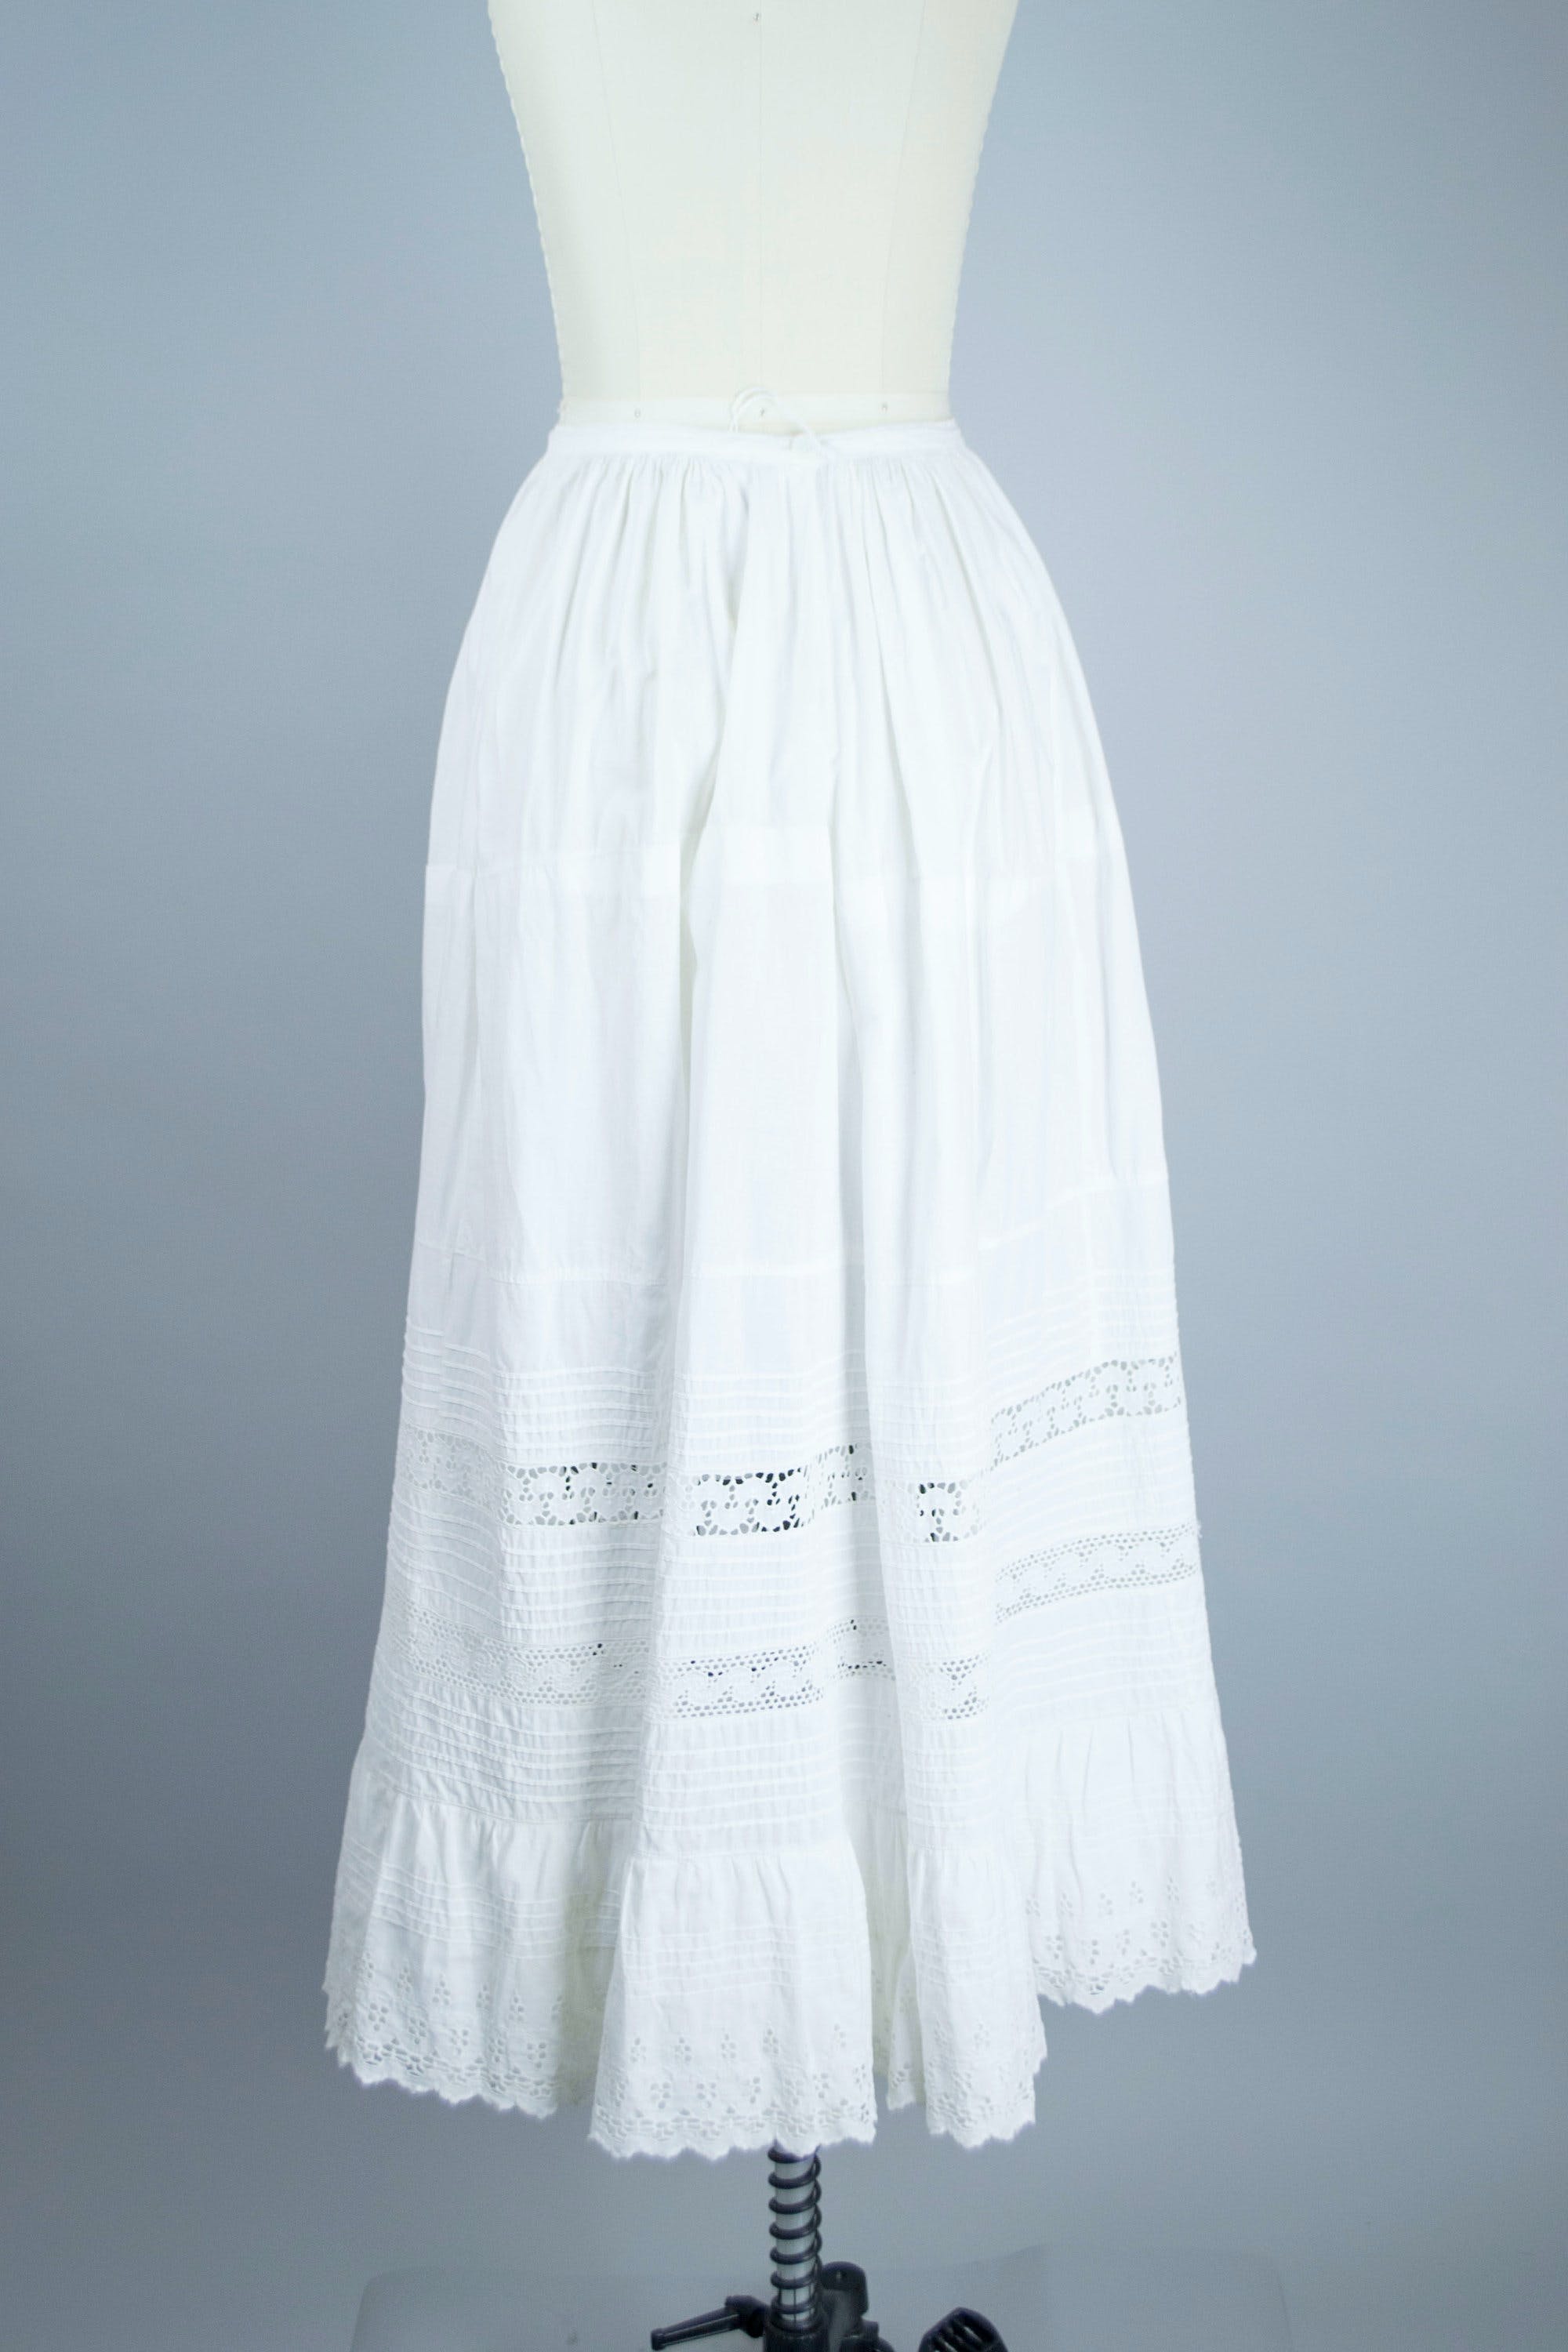 Vintage Edwardian White Lace Petticoat Skirt | Shop THRILLING